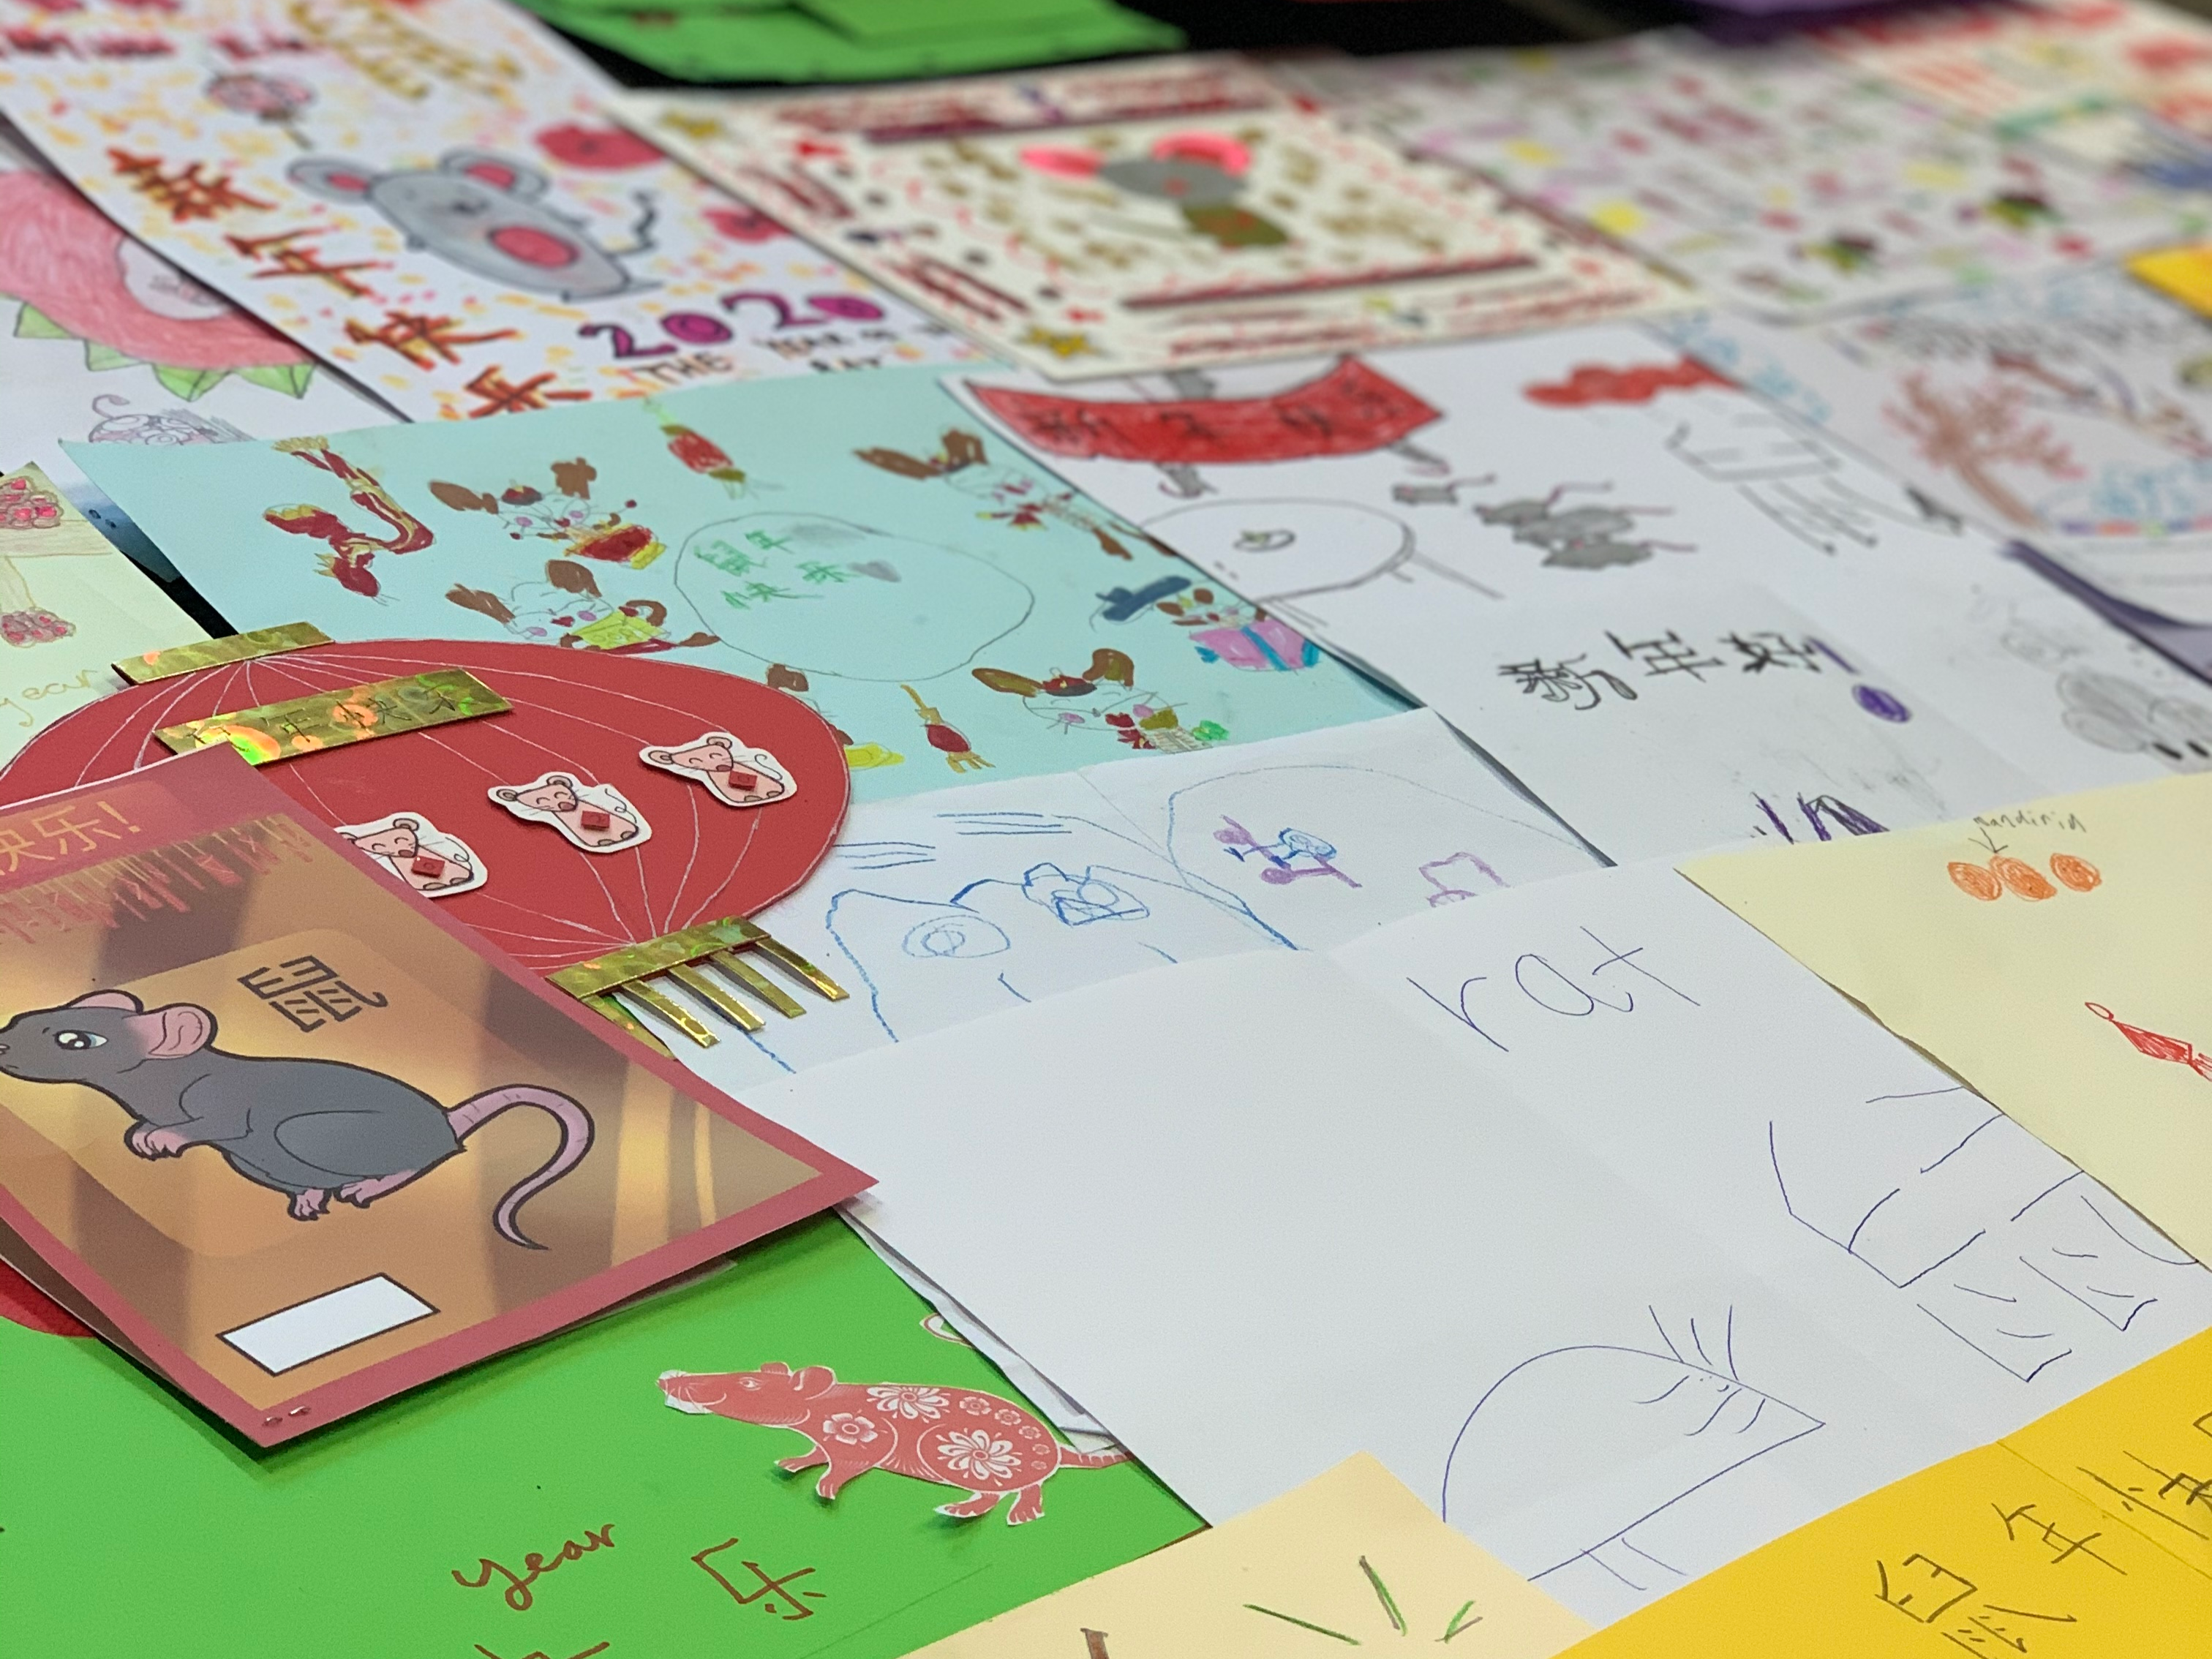 倫敦華夏中文學校2020 CNY鼠年卡片設計比賽圖片